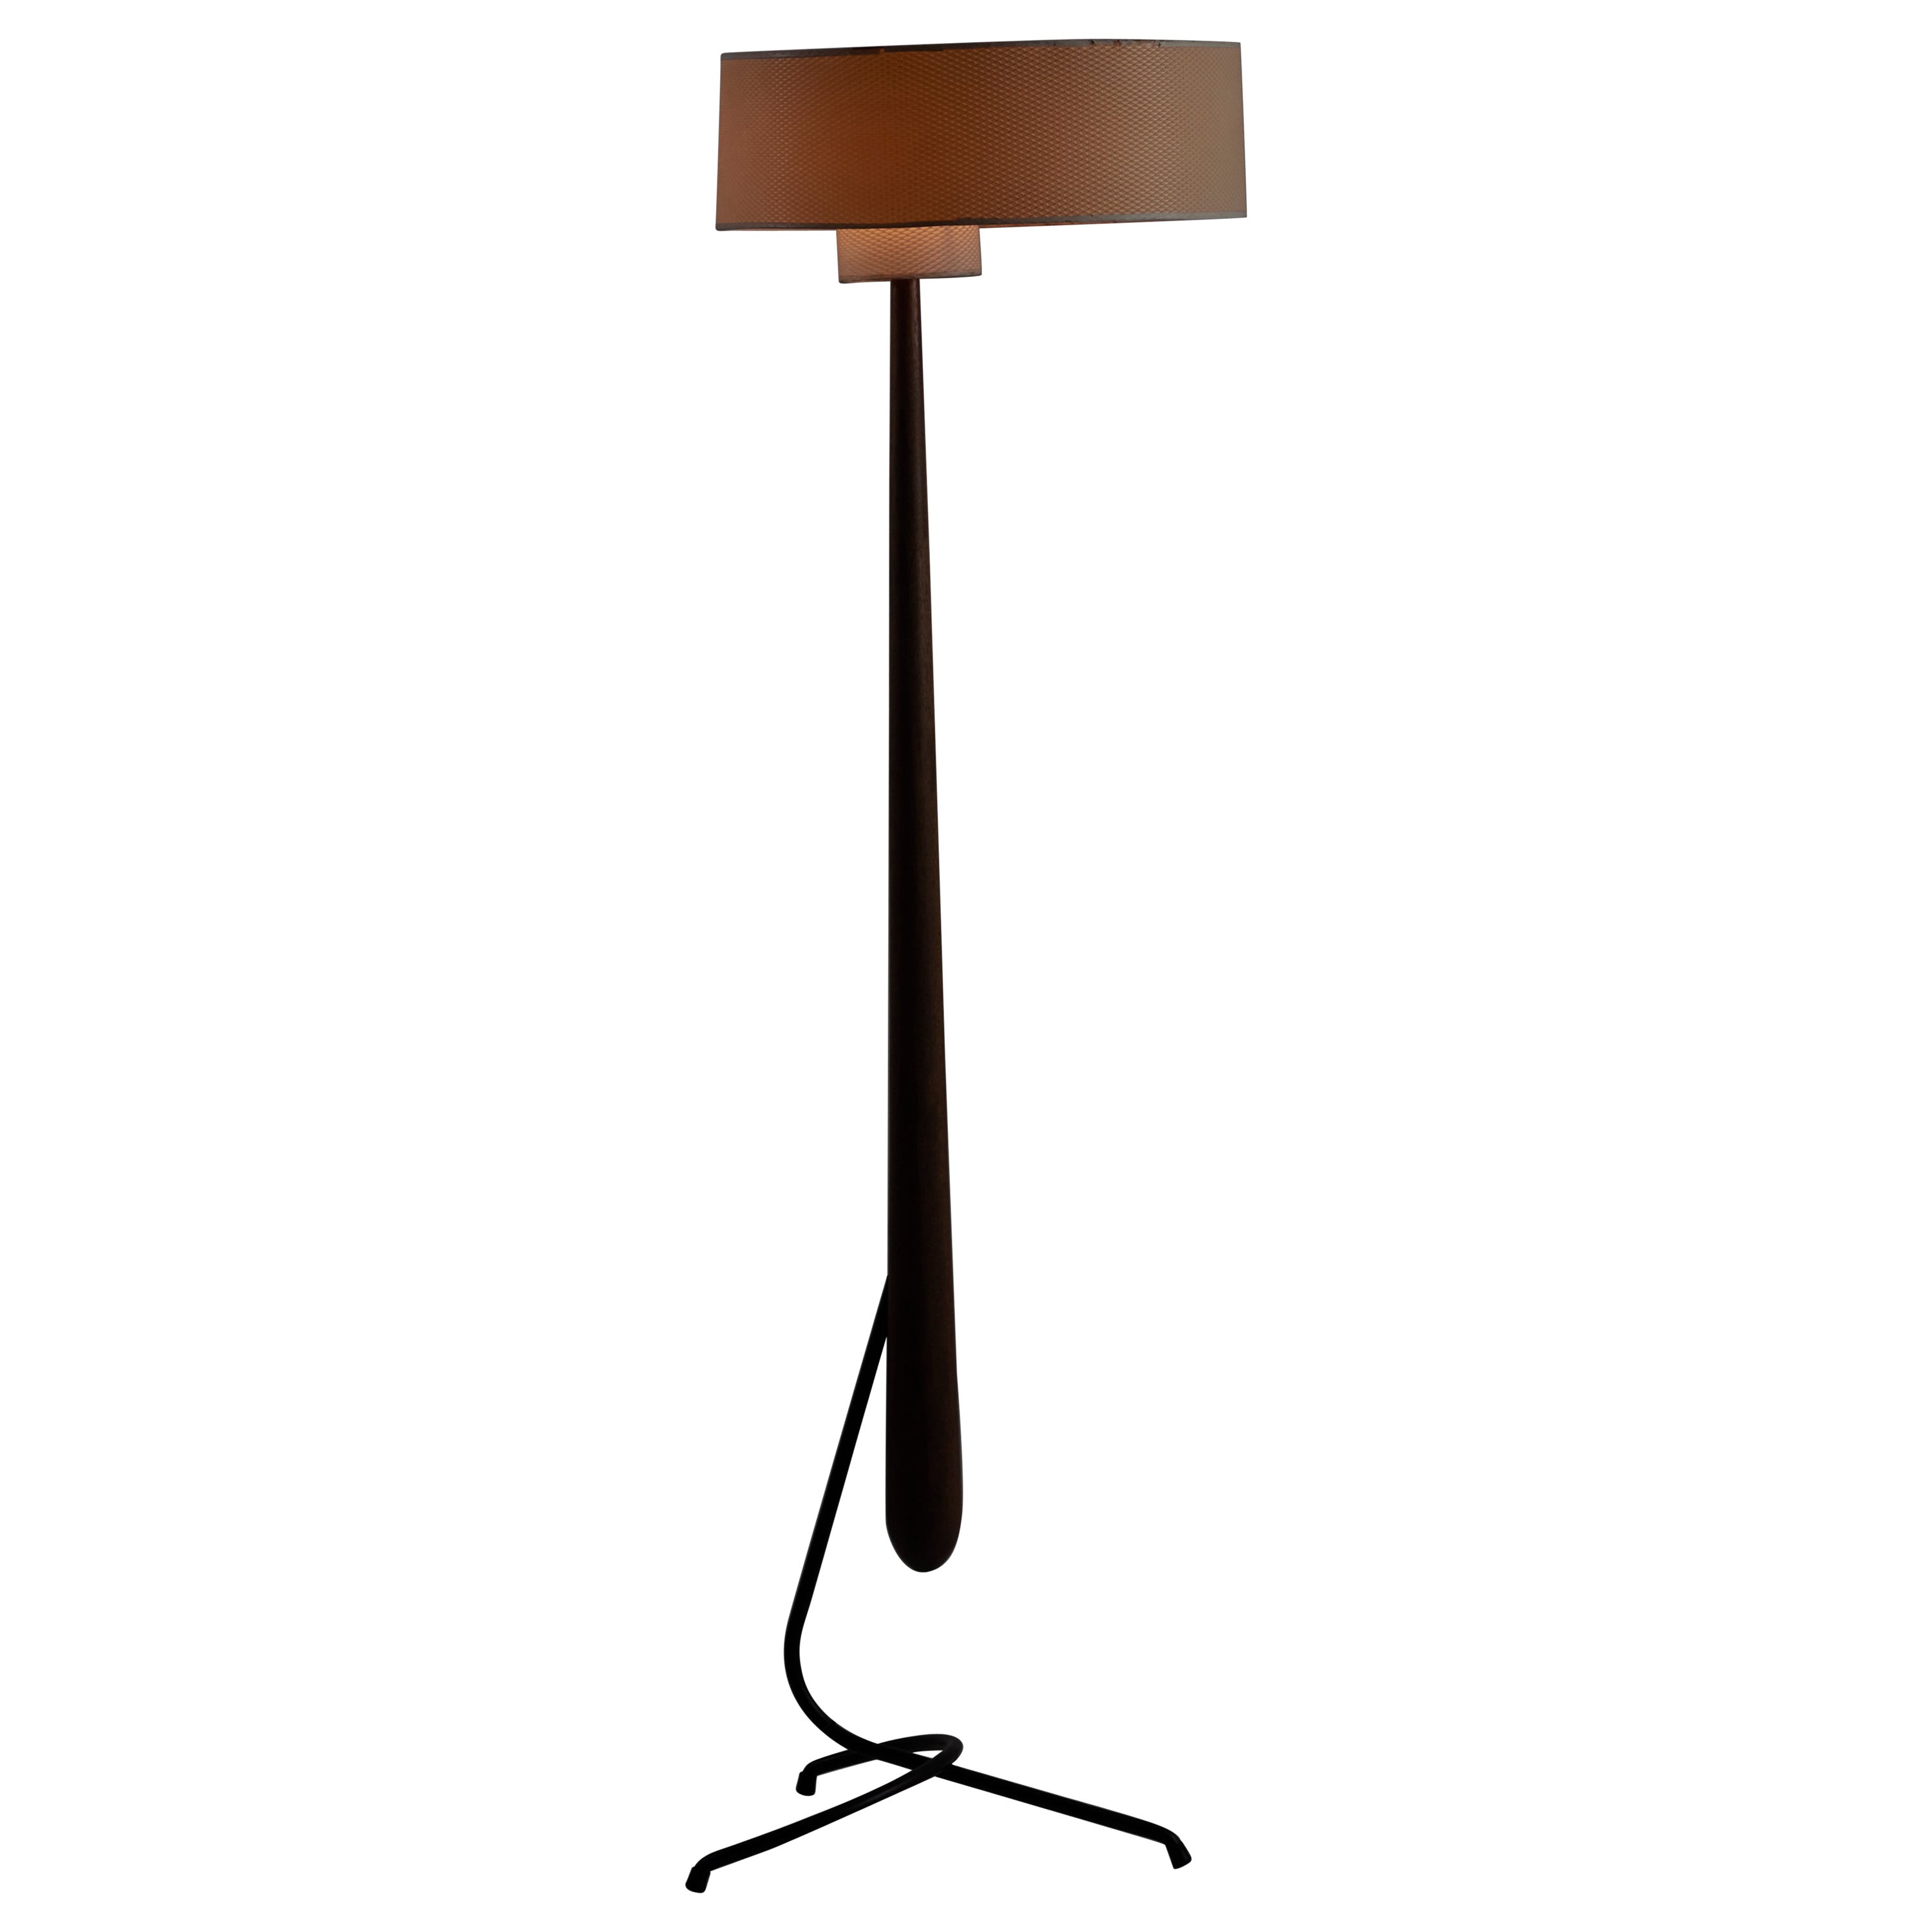 Rare Model 14.958 Floor Lamp by Rispal For Sale